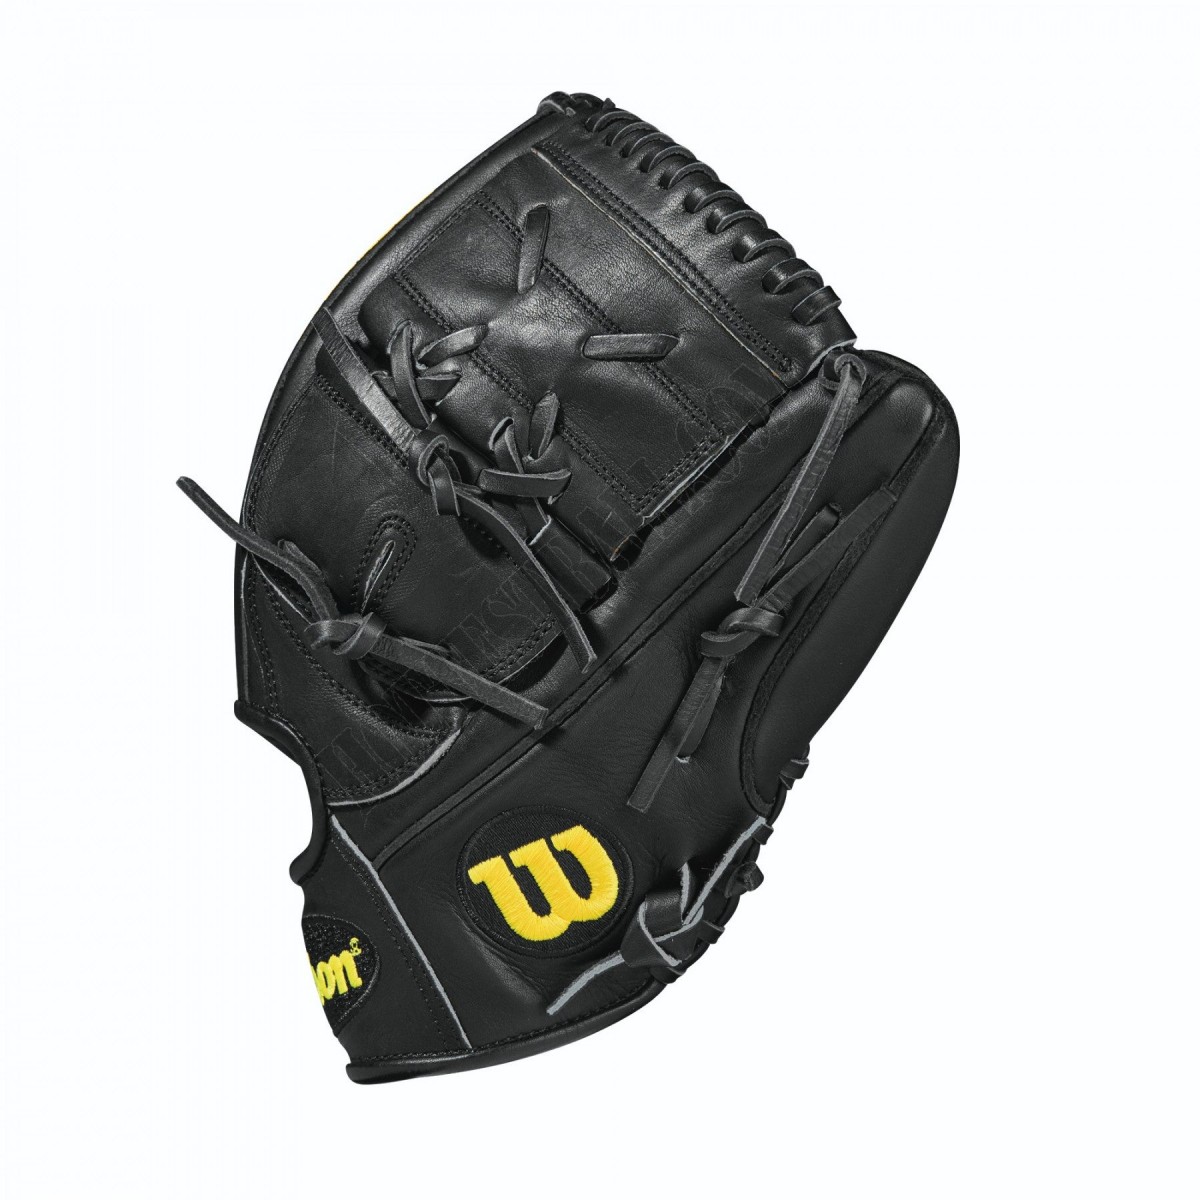 2021 A2000 CK22 GM 11.75" Pitcher's Baseball Glove ● Wilson Promotions - -3